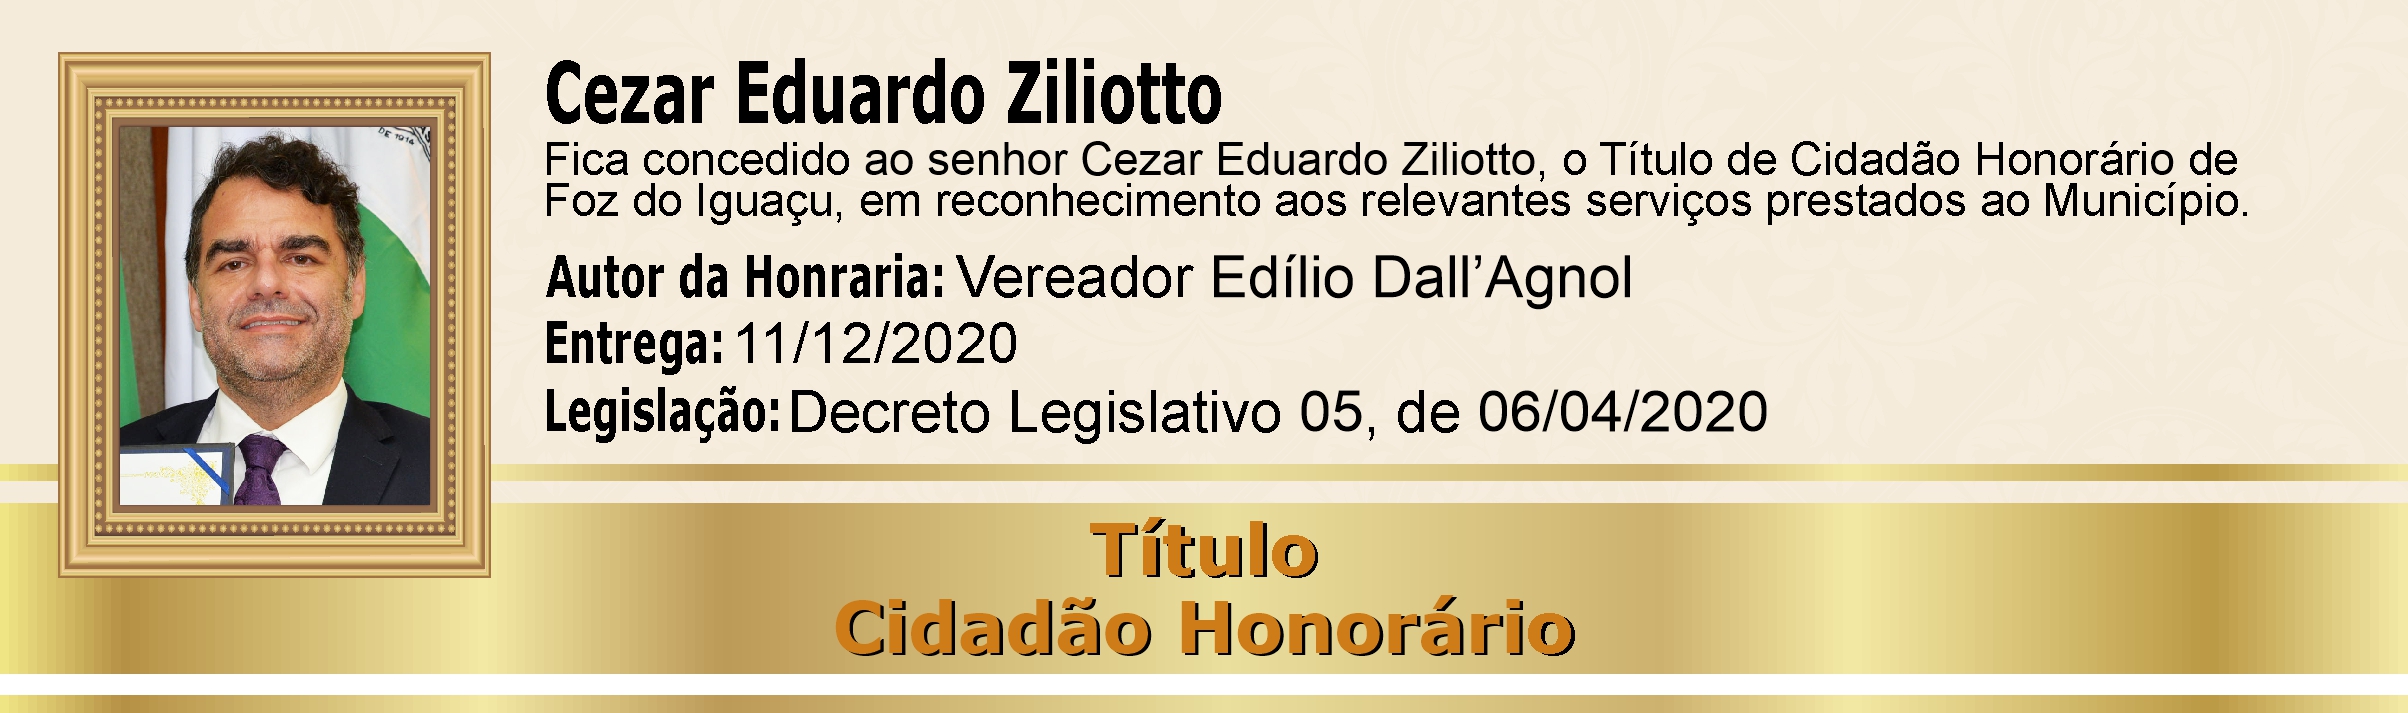 Cezar Eduardo Ziliotto